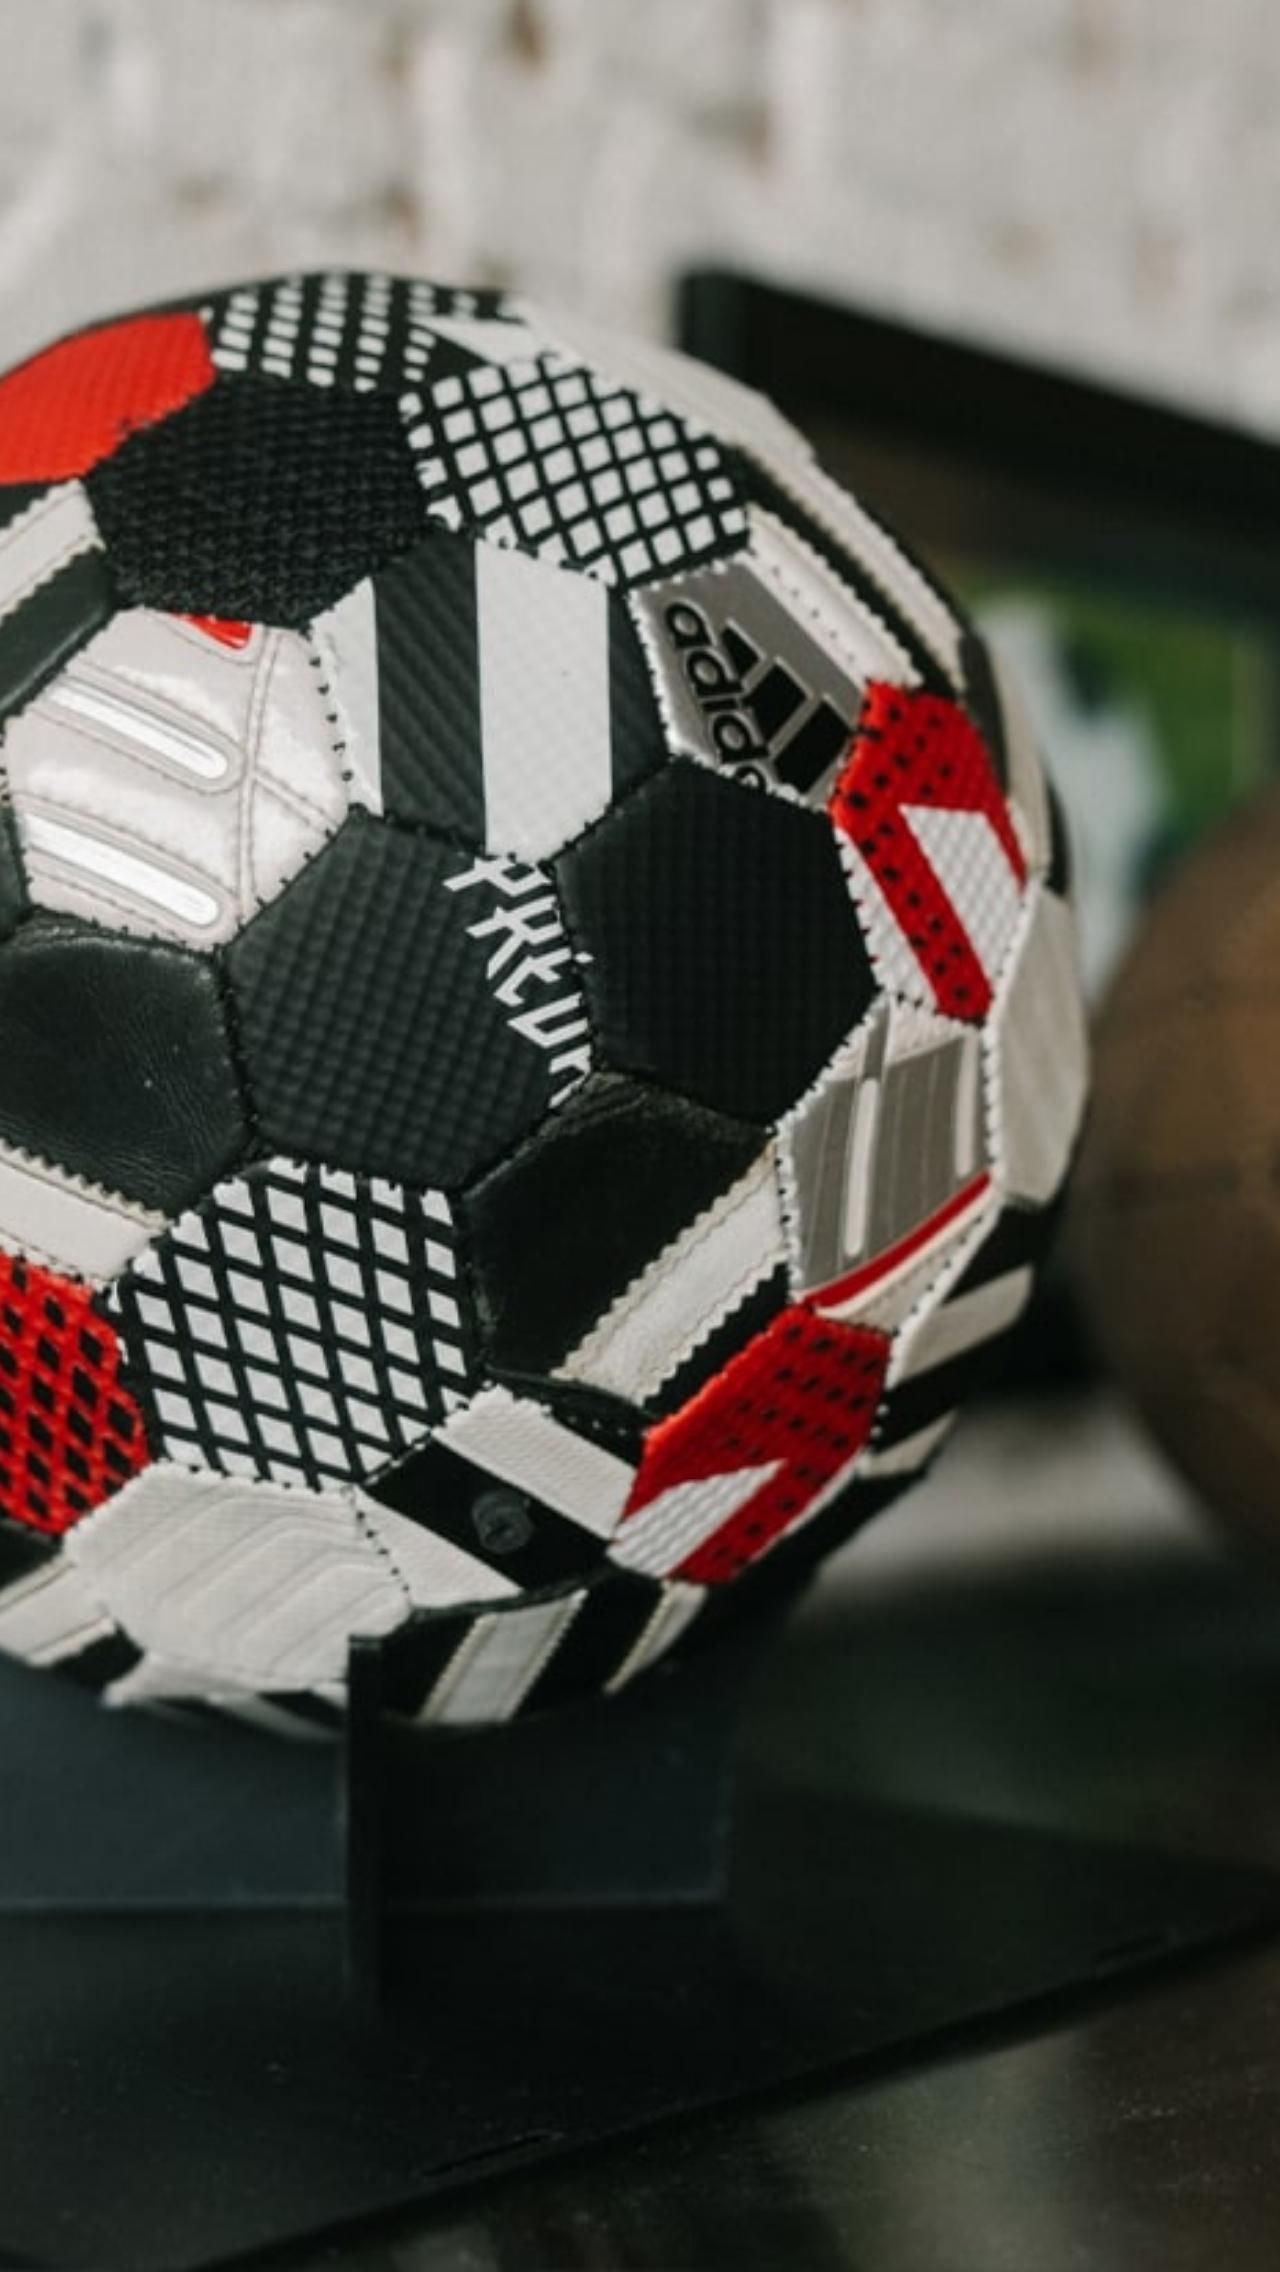 Известным британского дизайнера сделал мяч, созданный из старых бутс Predator от adidas. Компания даже предложила дизайнеру деловое сотрудничество. Никаких подробностей об этом партнёрстве пока нет.